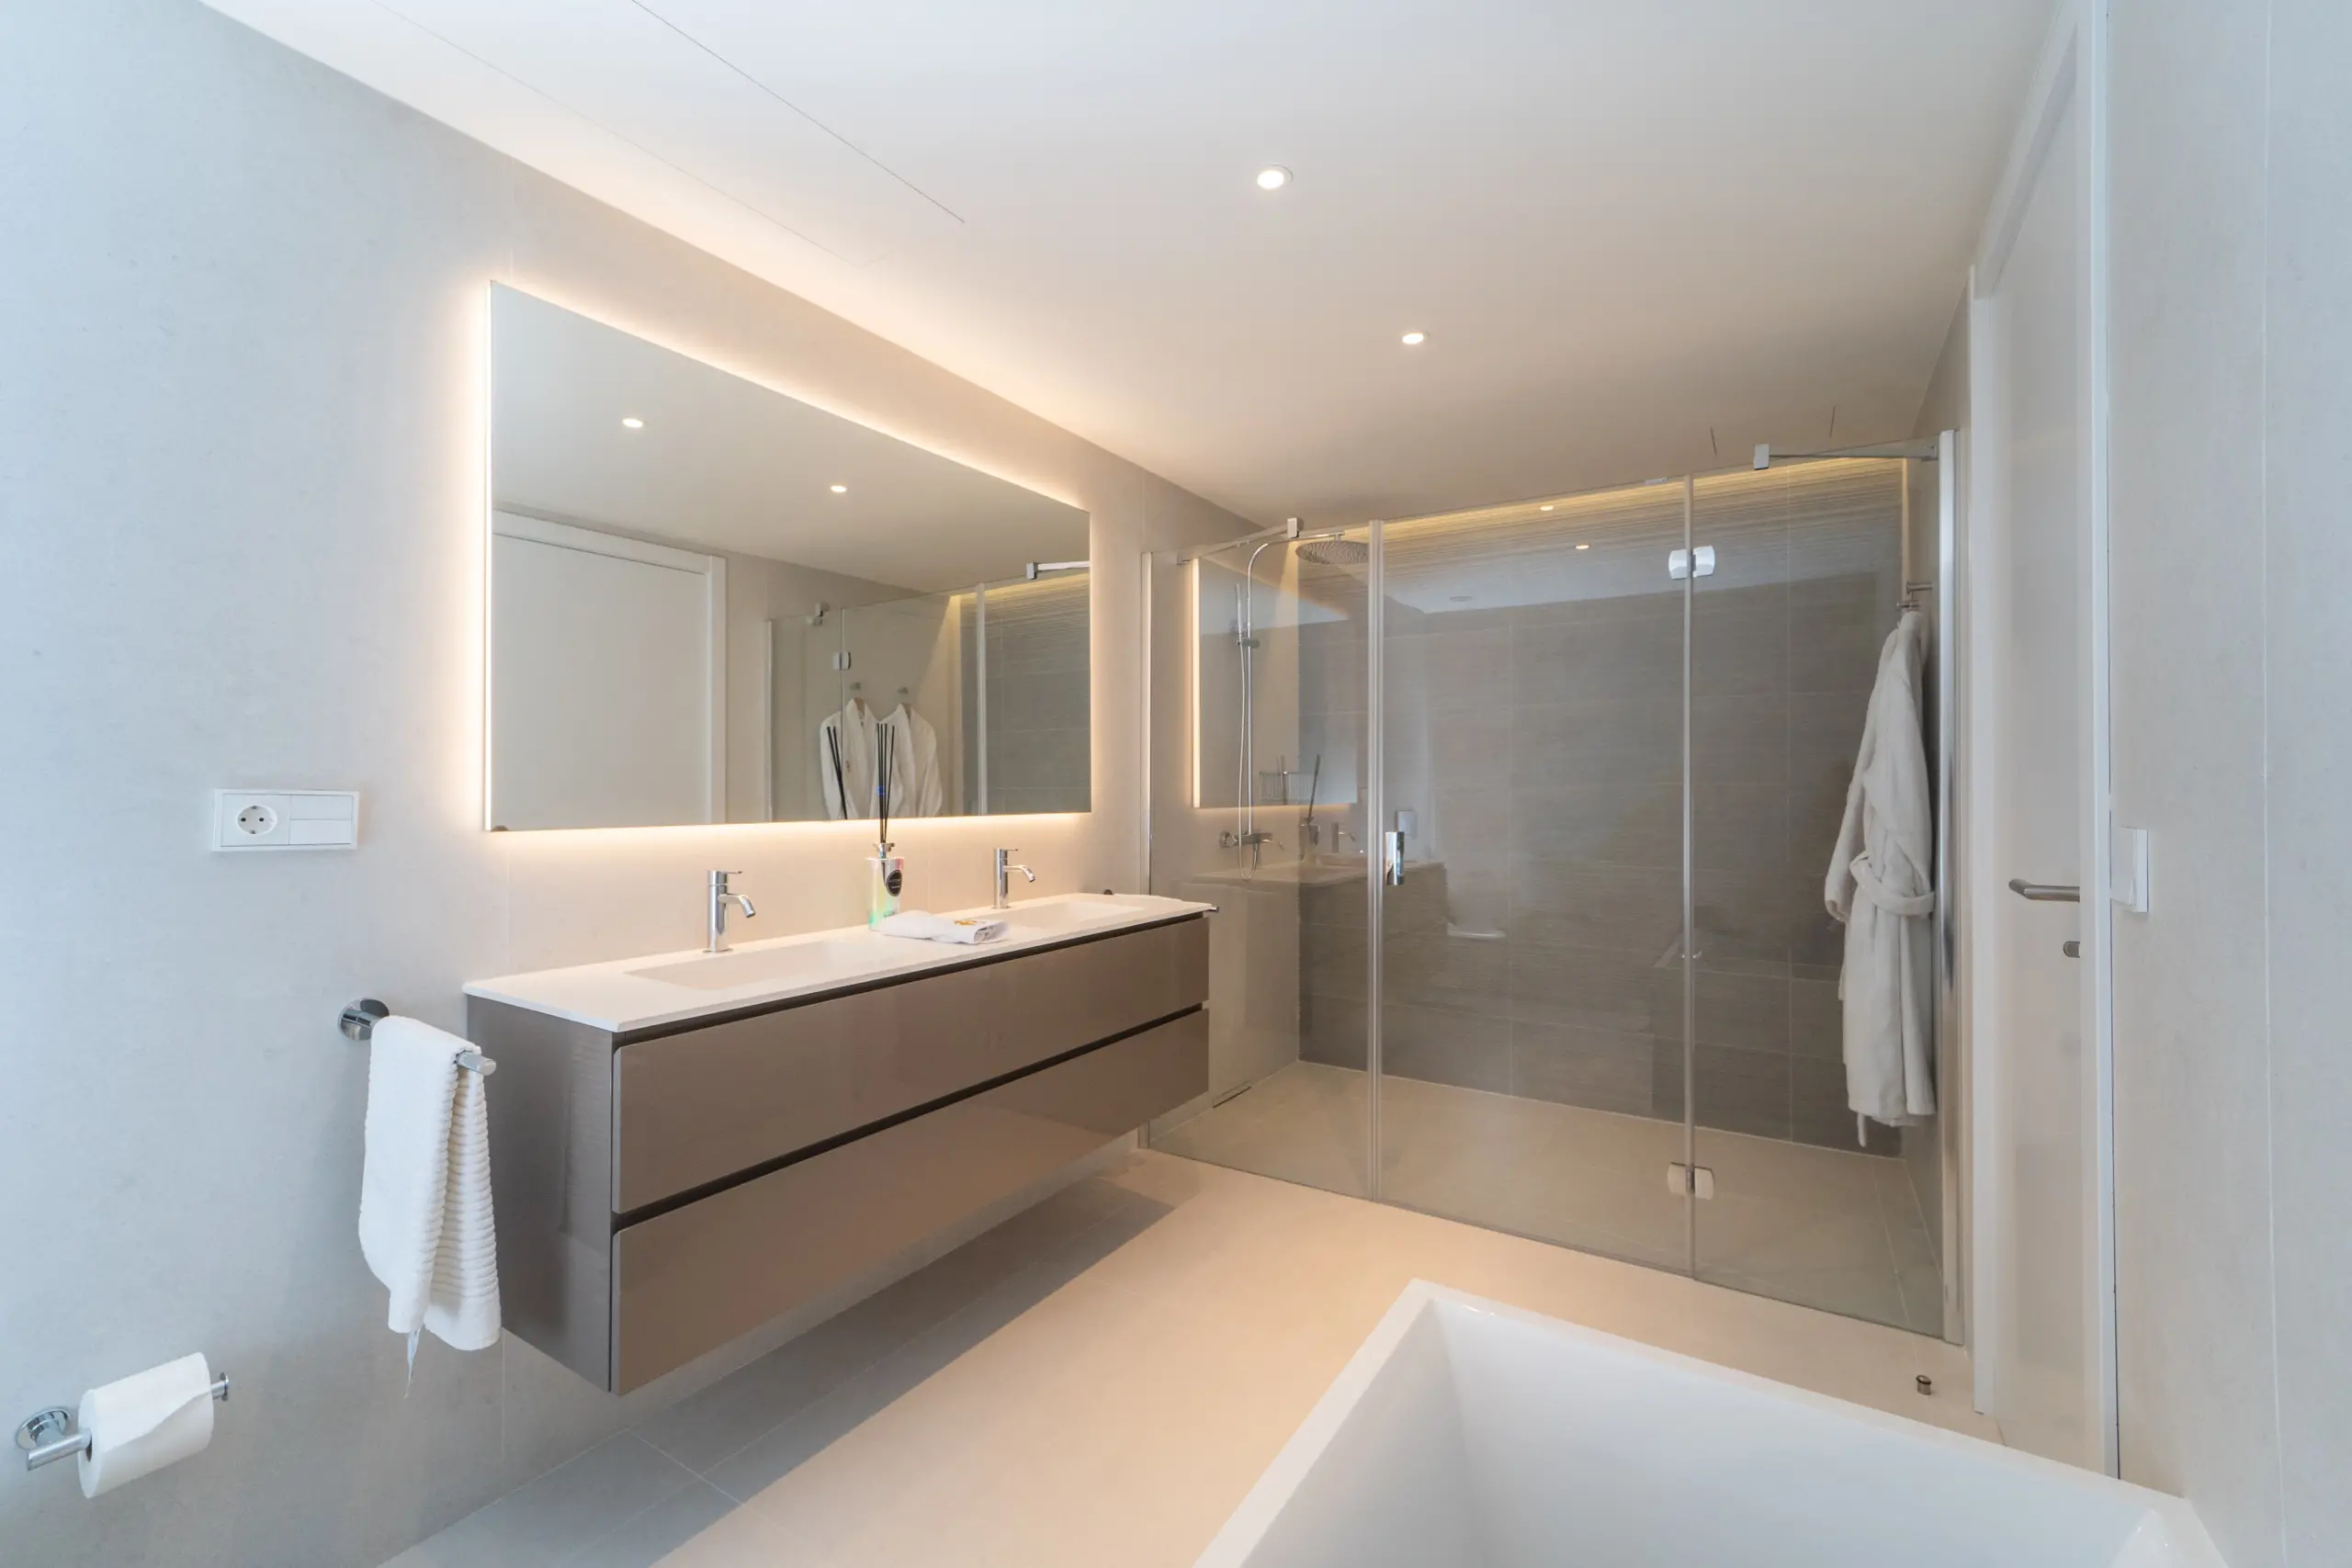 Baño principal de lujo con dos lavamanos, espejos grandes y una ducha amplia de vidrio. Iluminación LED alrededor del espejo principal añade un toque sofisticado. Decorado en tonos beige y grises, transmitiendo un ambiente tranquilo y elegante.